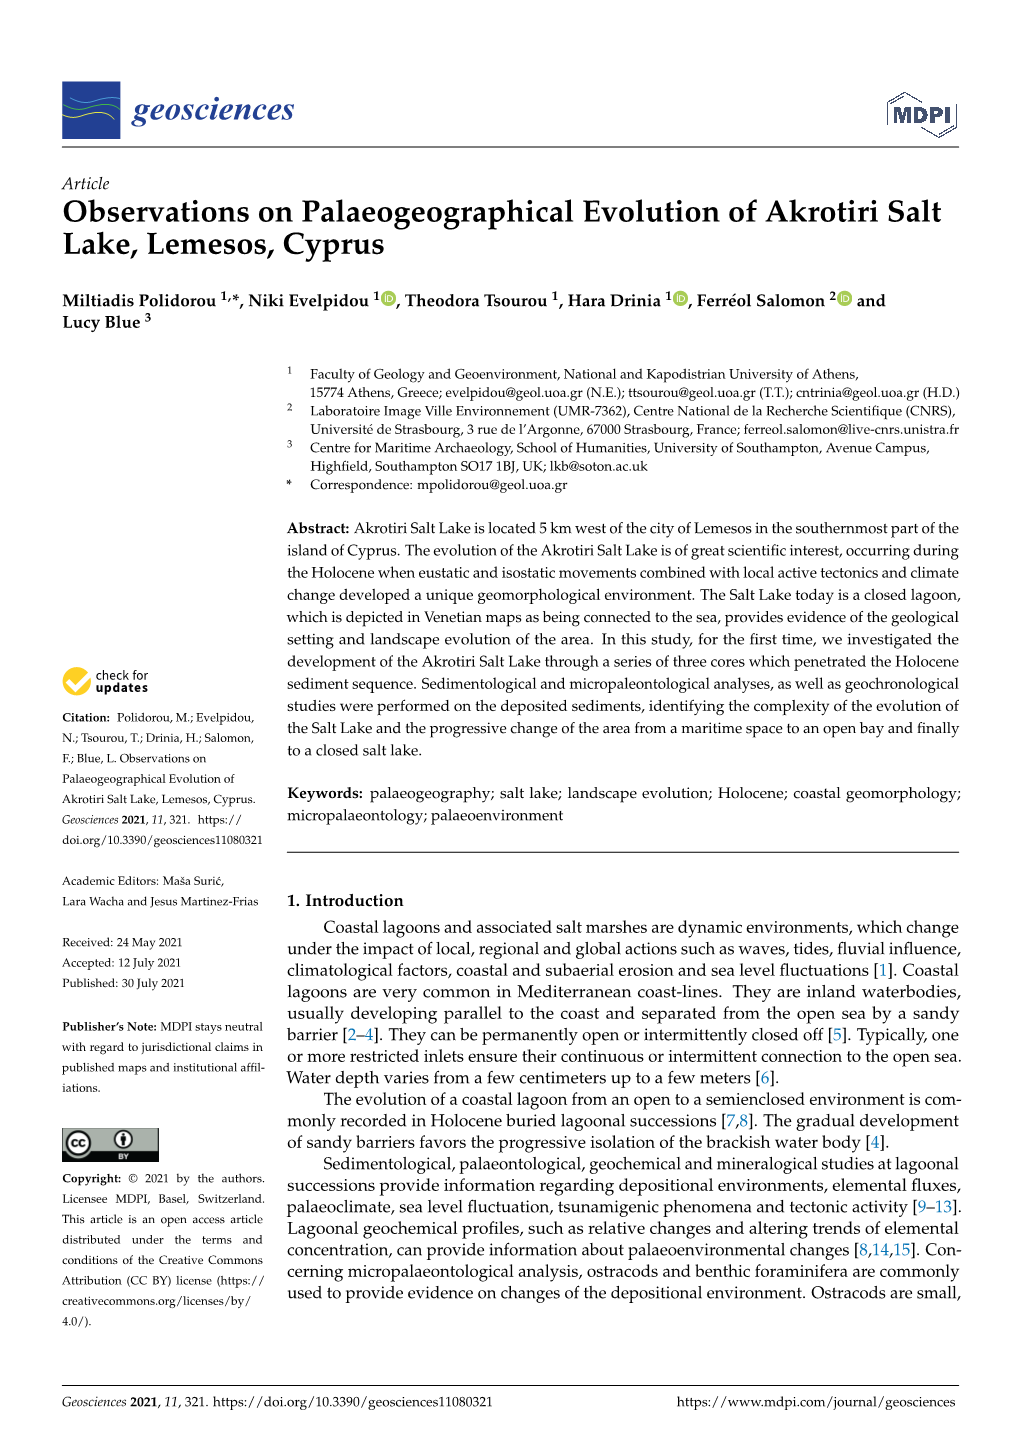 Observations on Palaeogeographical Evolution of Akrotiri Salt Lake, Lemesos, Cyprus